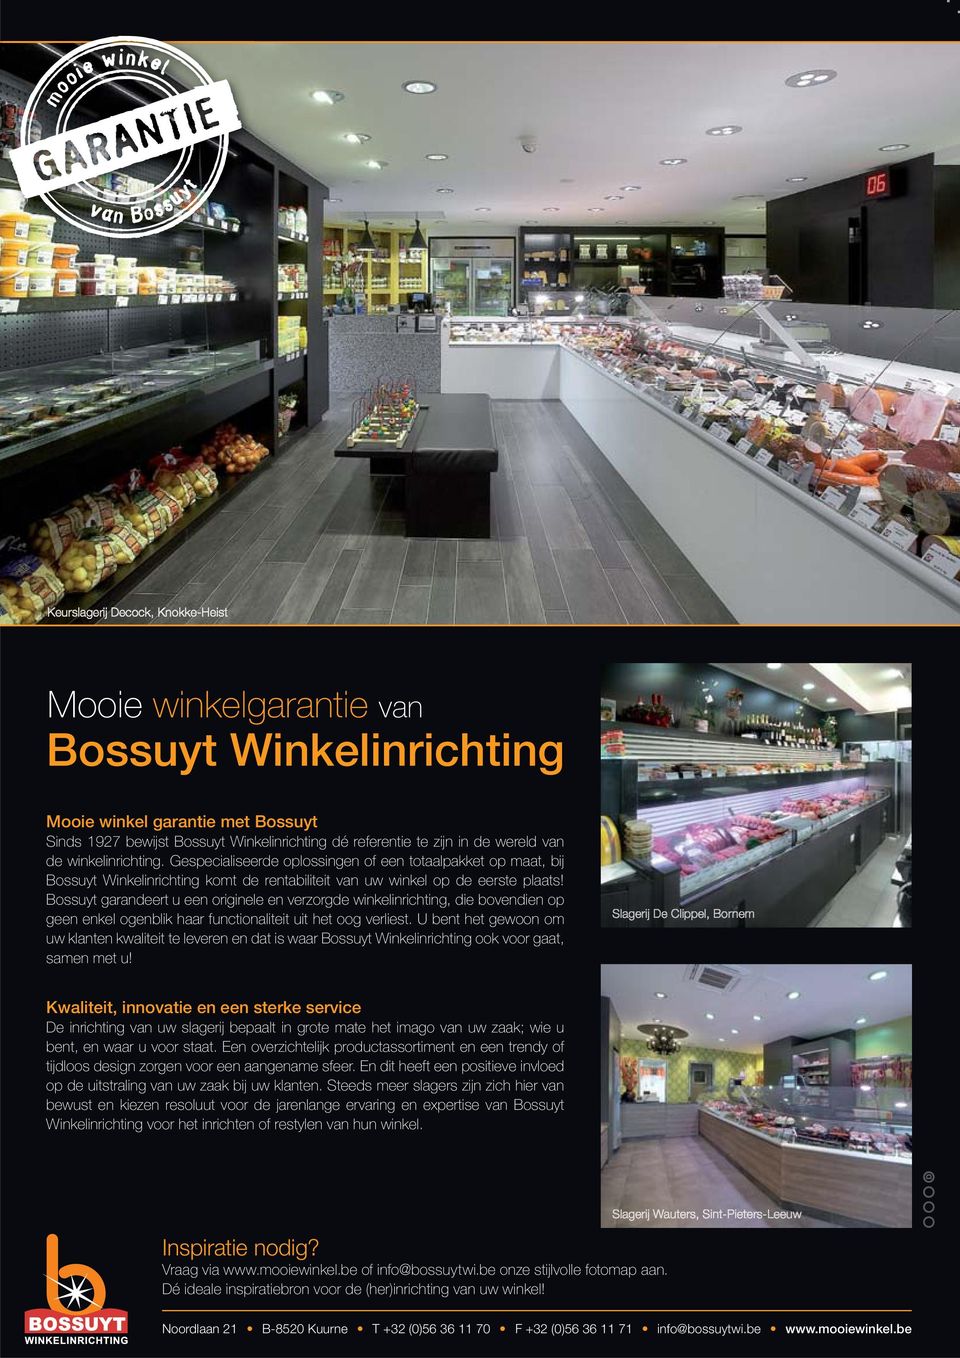 Bossuyt garandeert u een originele en verzorgde winkelinrichting, die bovendien op geen enkel ogenblik haar functionaliteit uit het oog verliest.